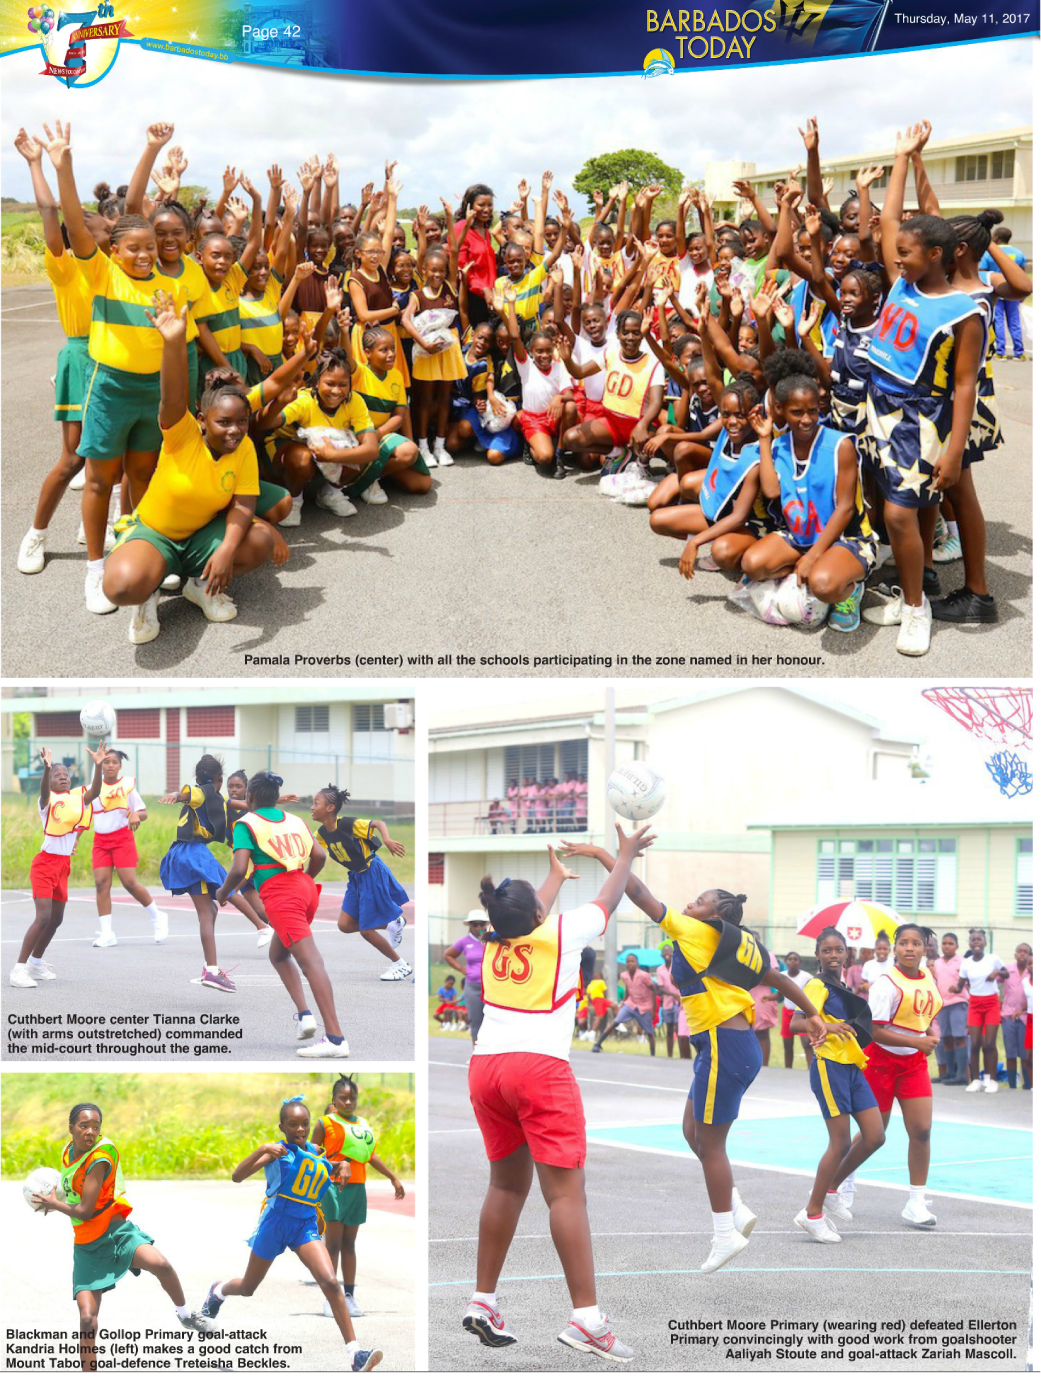 Pamala Proverbs of PRMR Inc. donates netballs to Barbados athletes